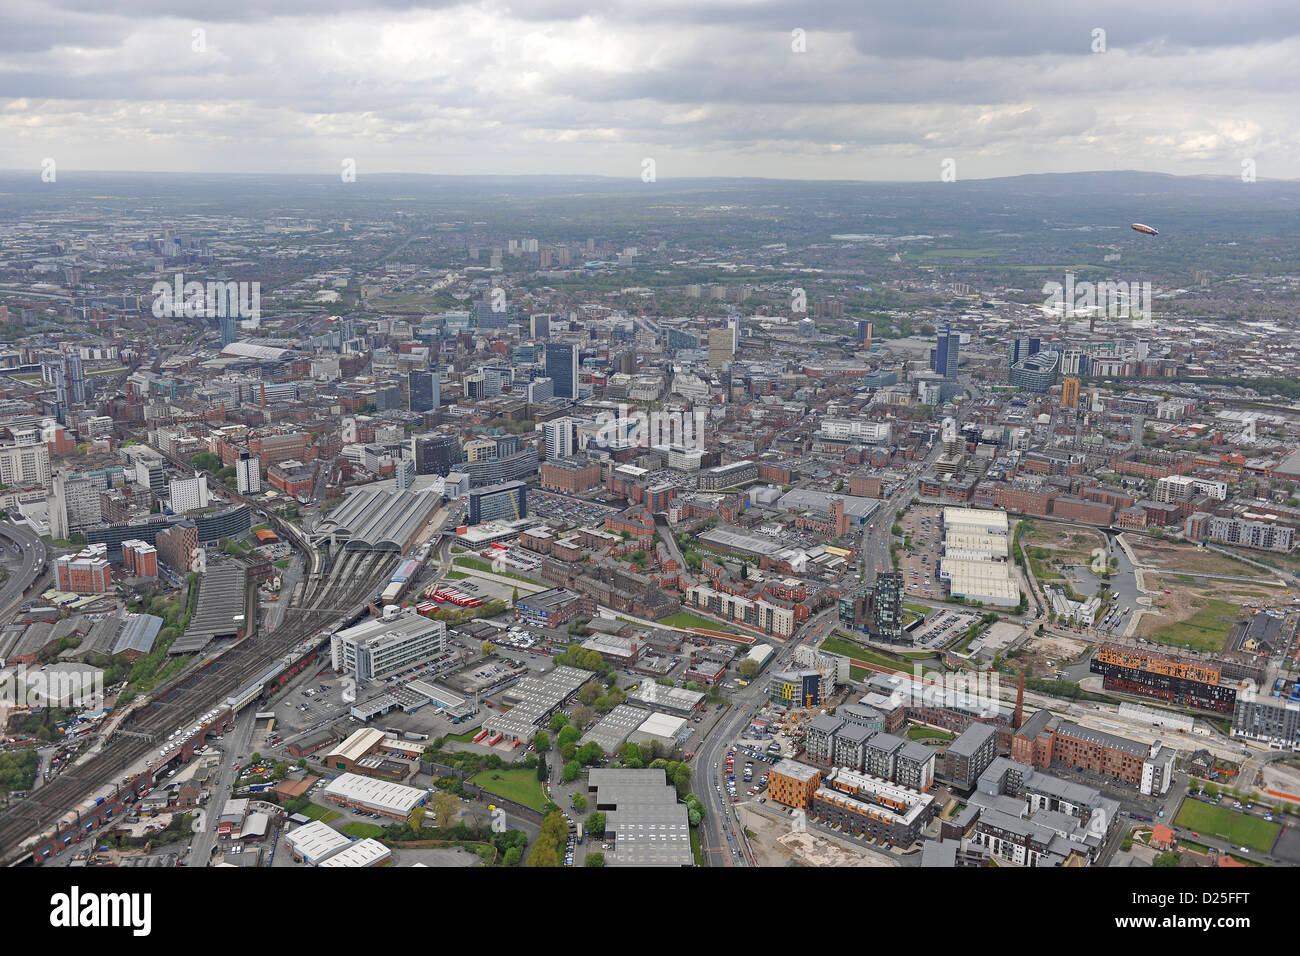 Fotografia aerea del centro cittadino di Leeds Foto Stock